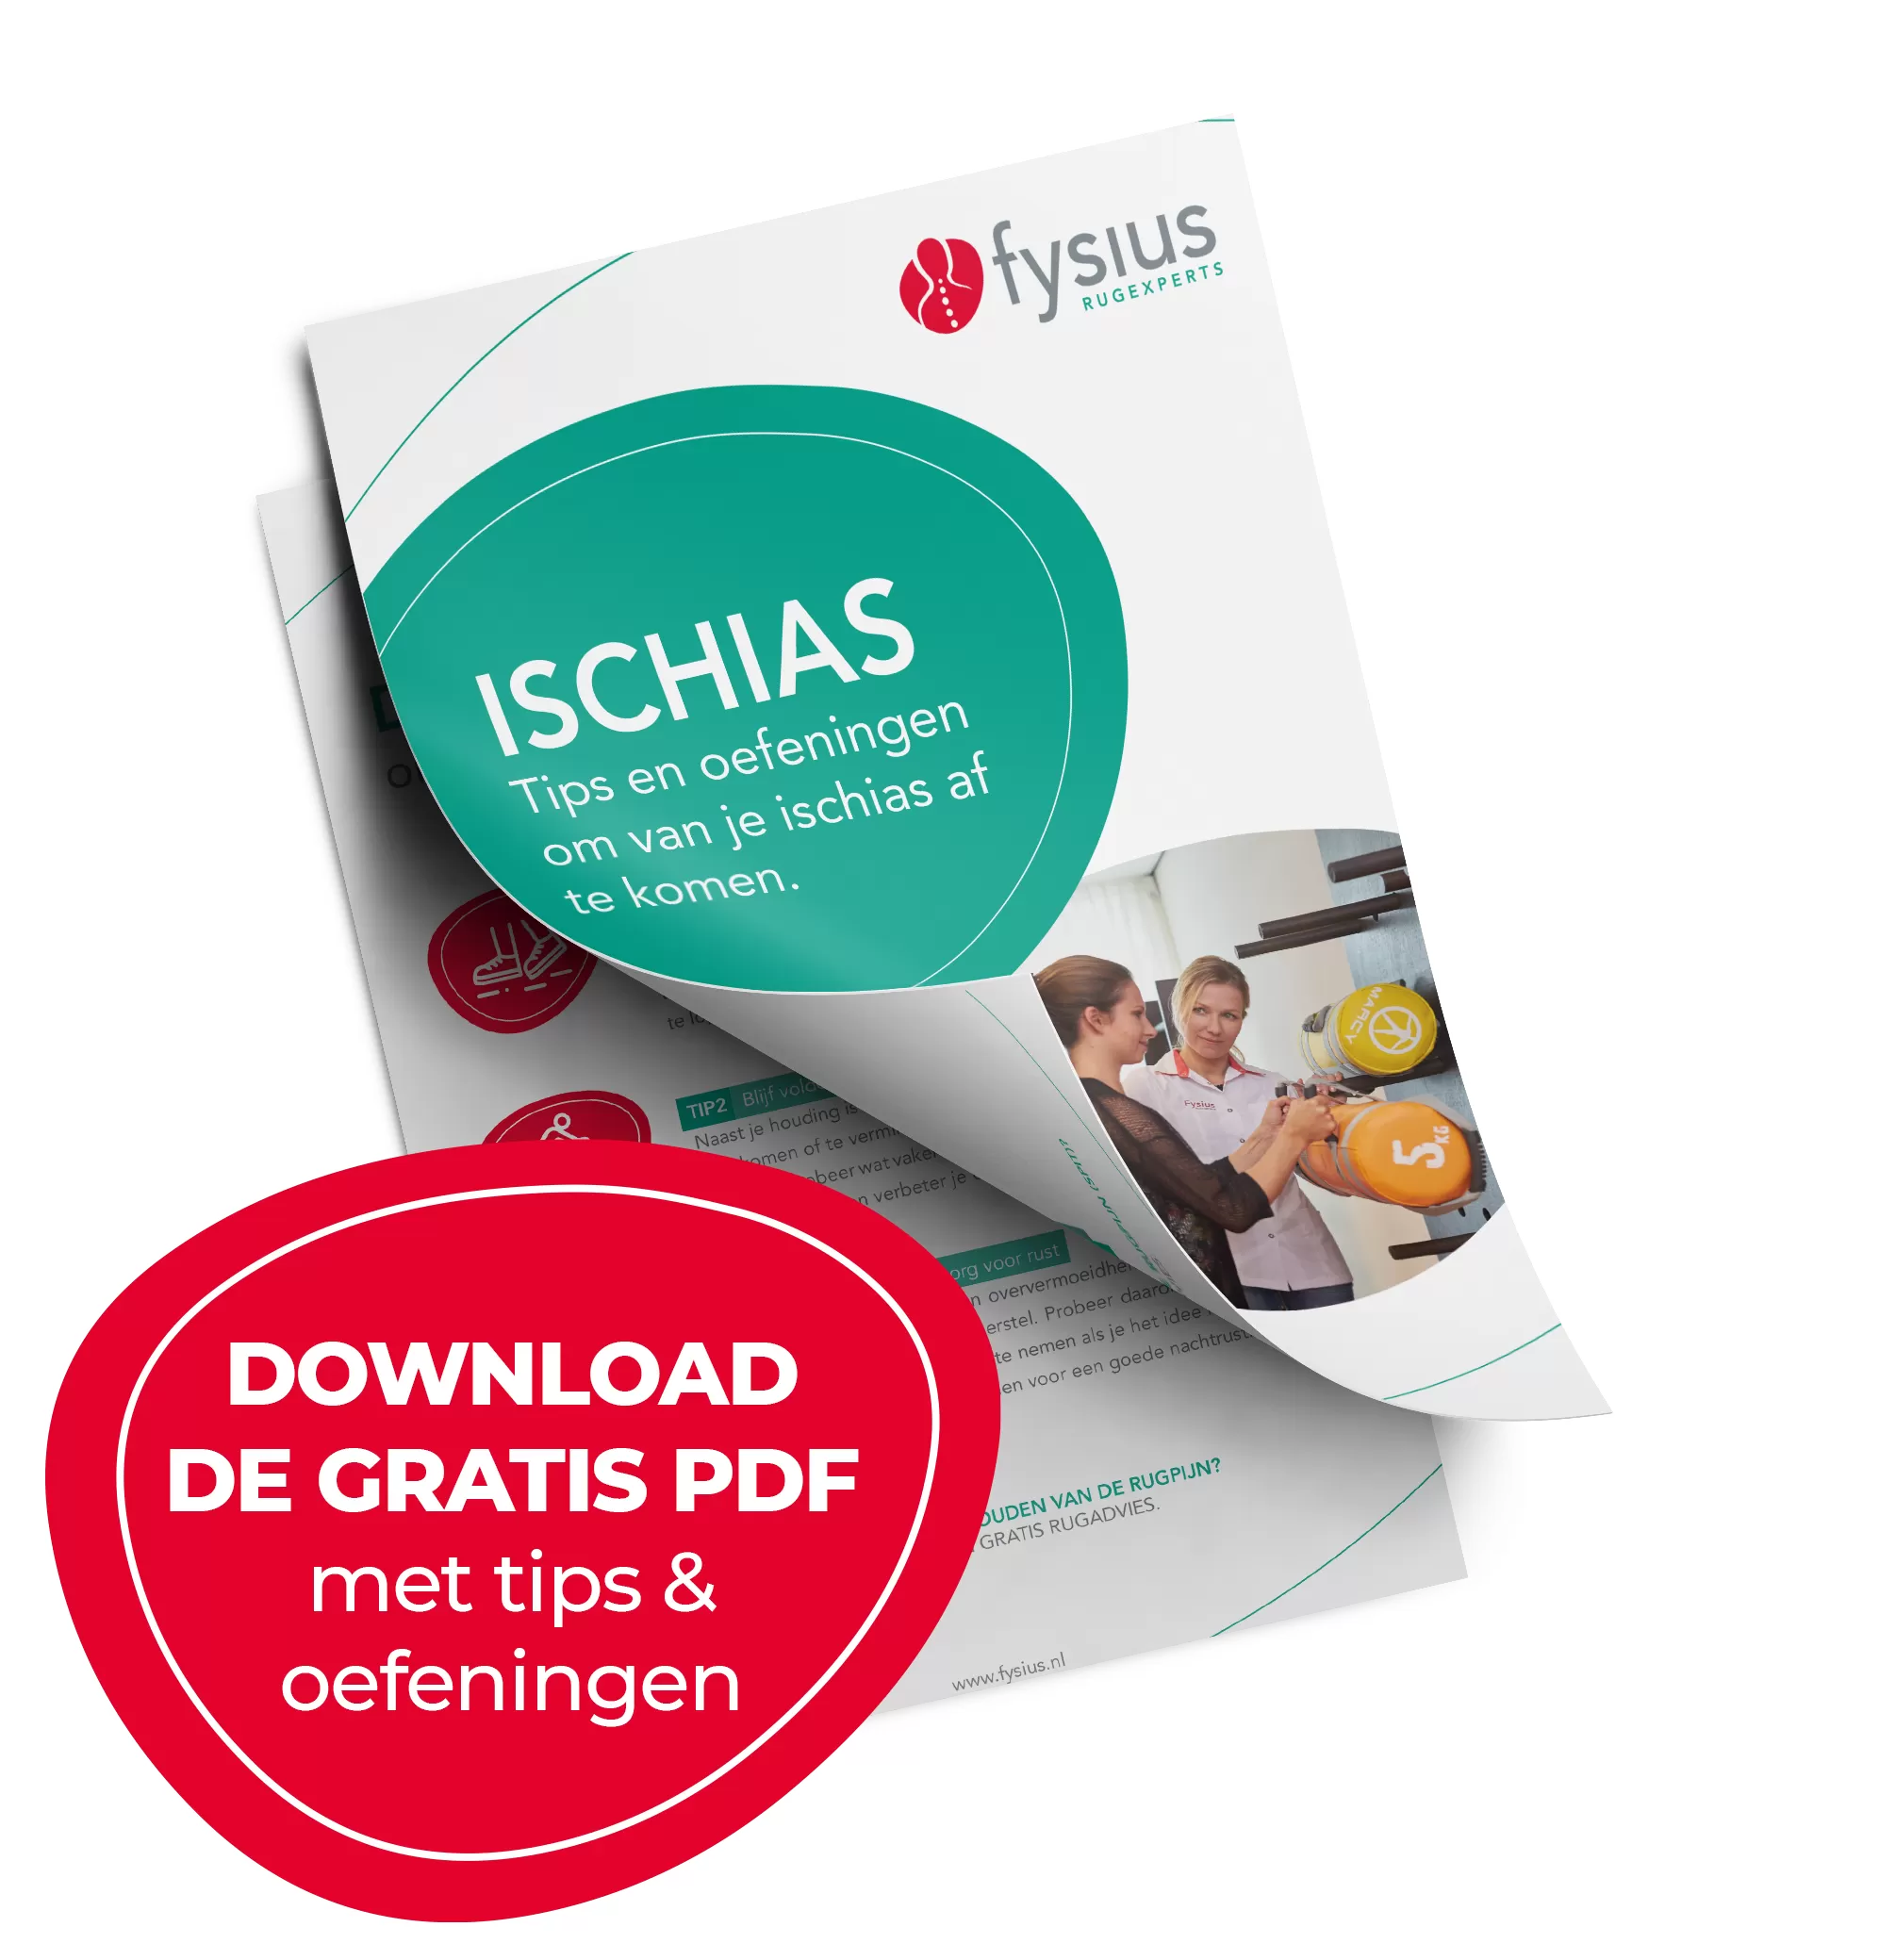 Download-pdf-met-tips&oefeningen-ischias